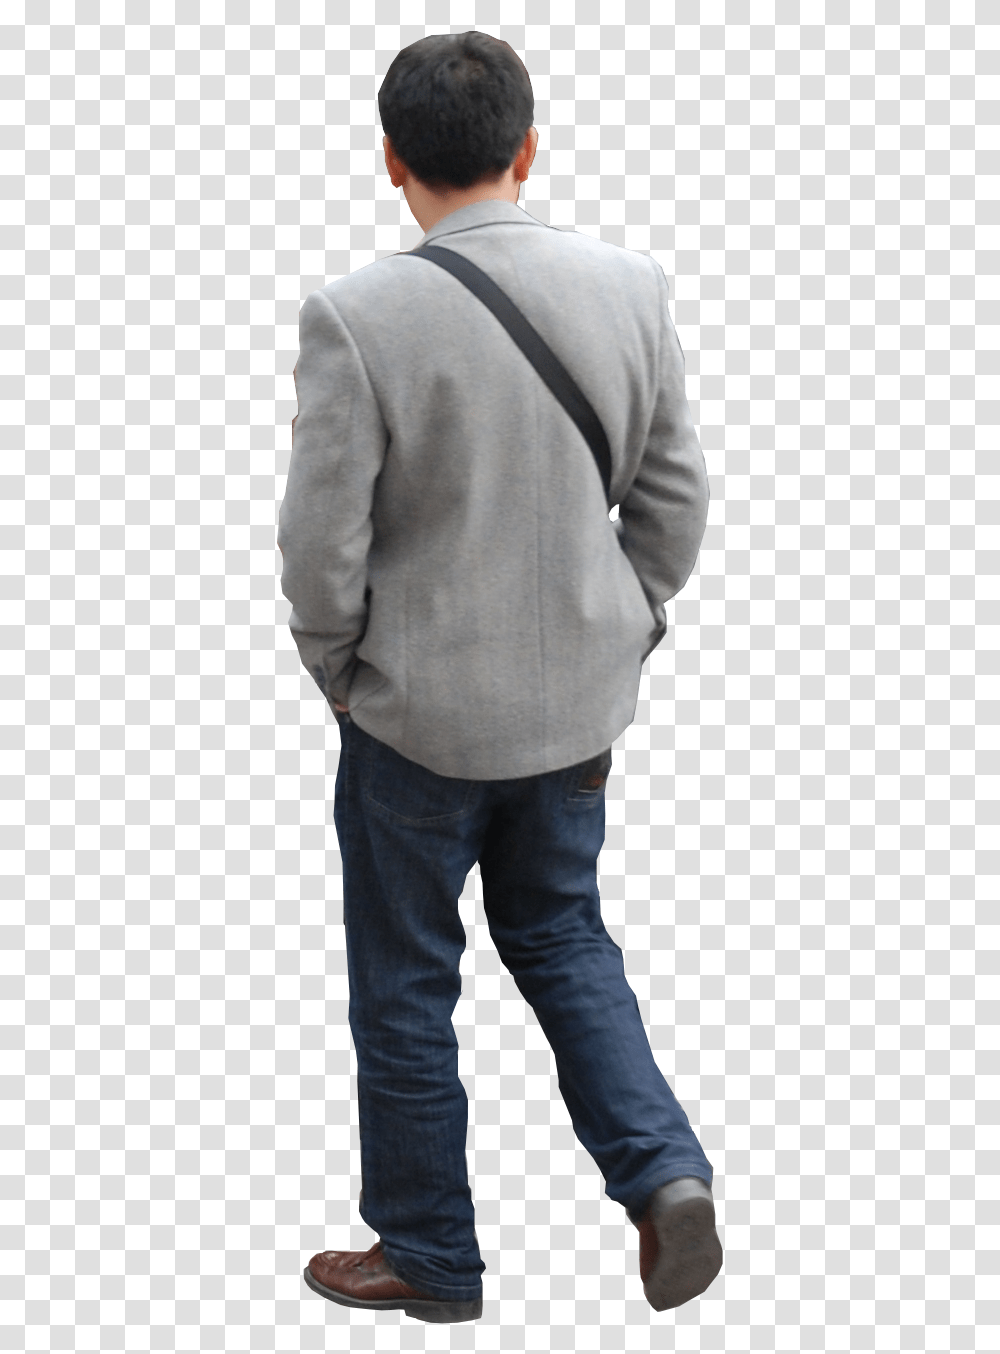 Man Walking Away, Person, Sweater, Sweatshirt Transparent Png